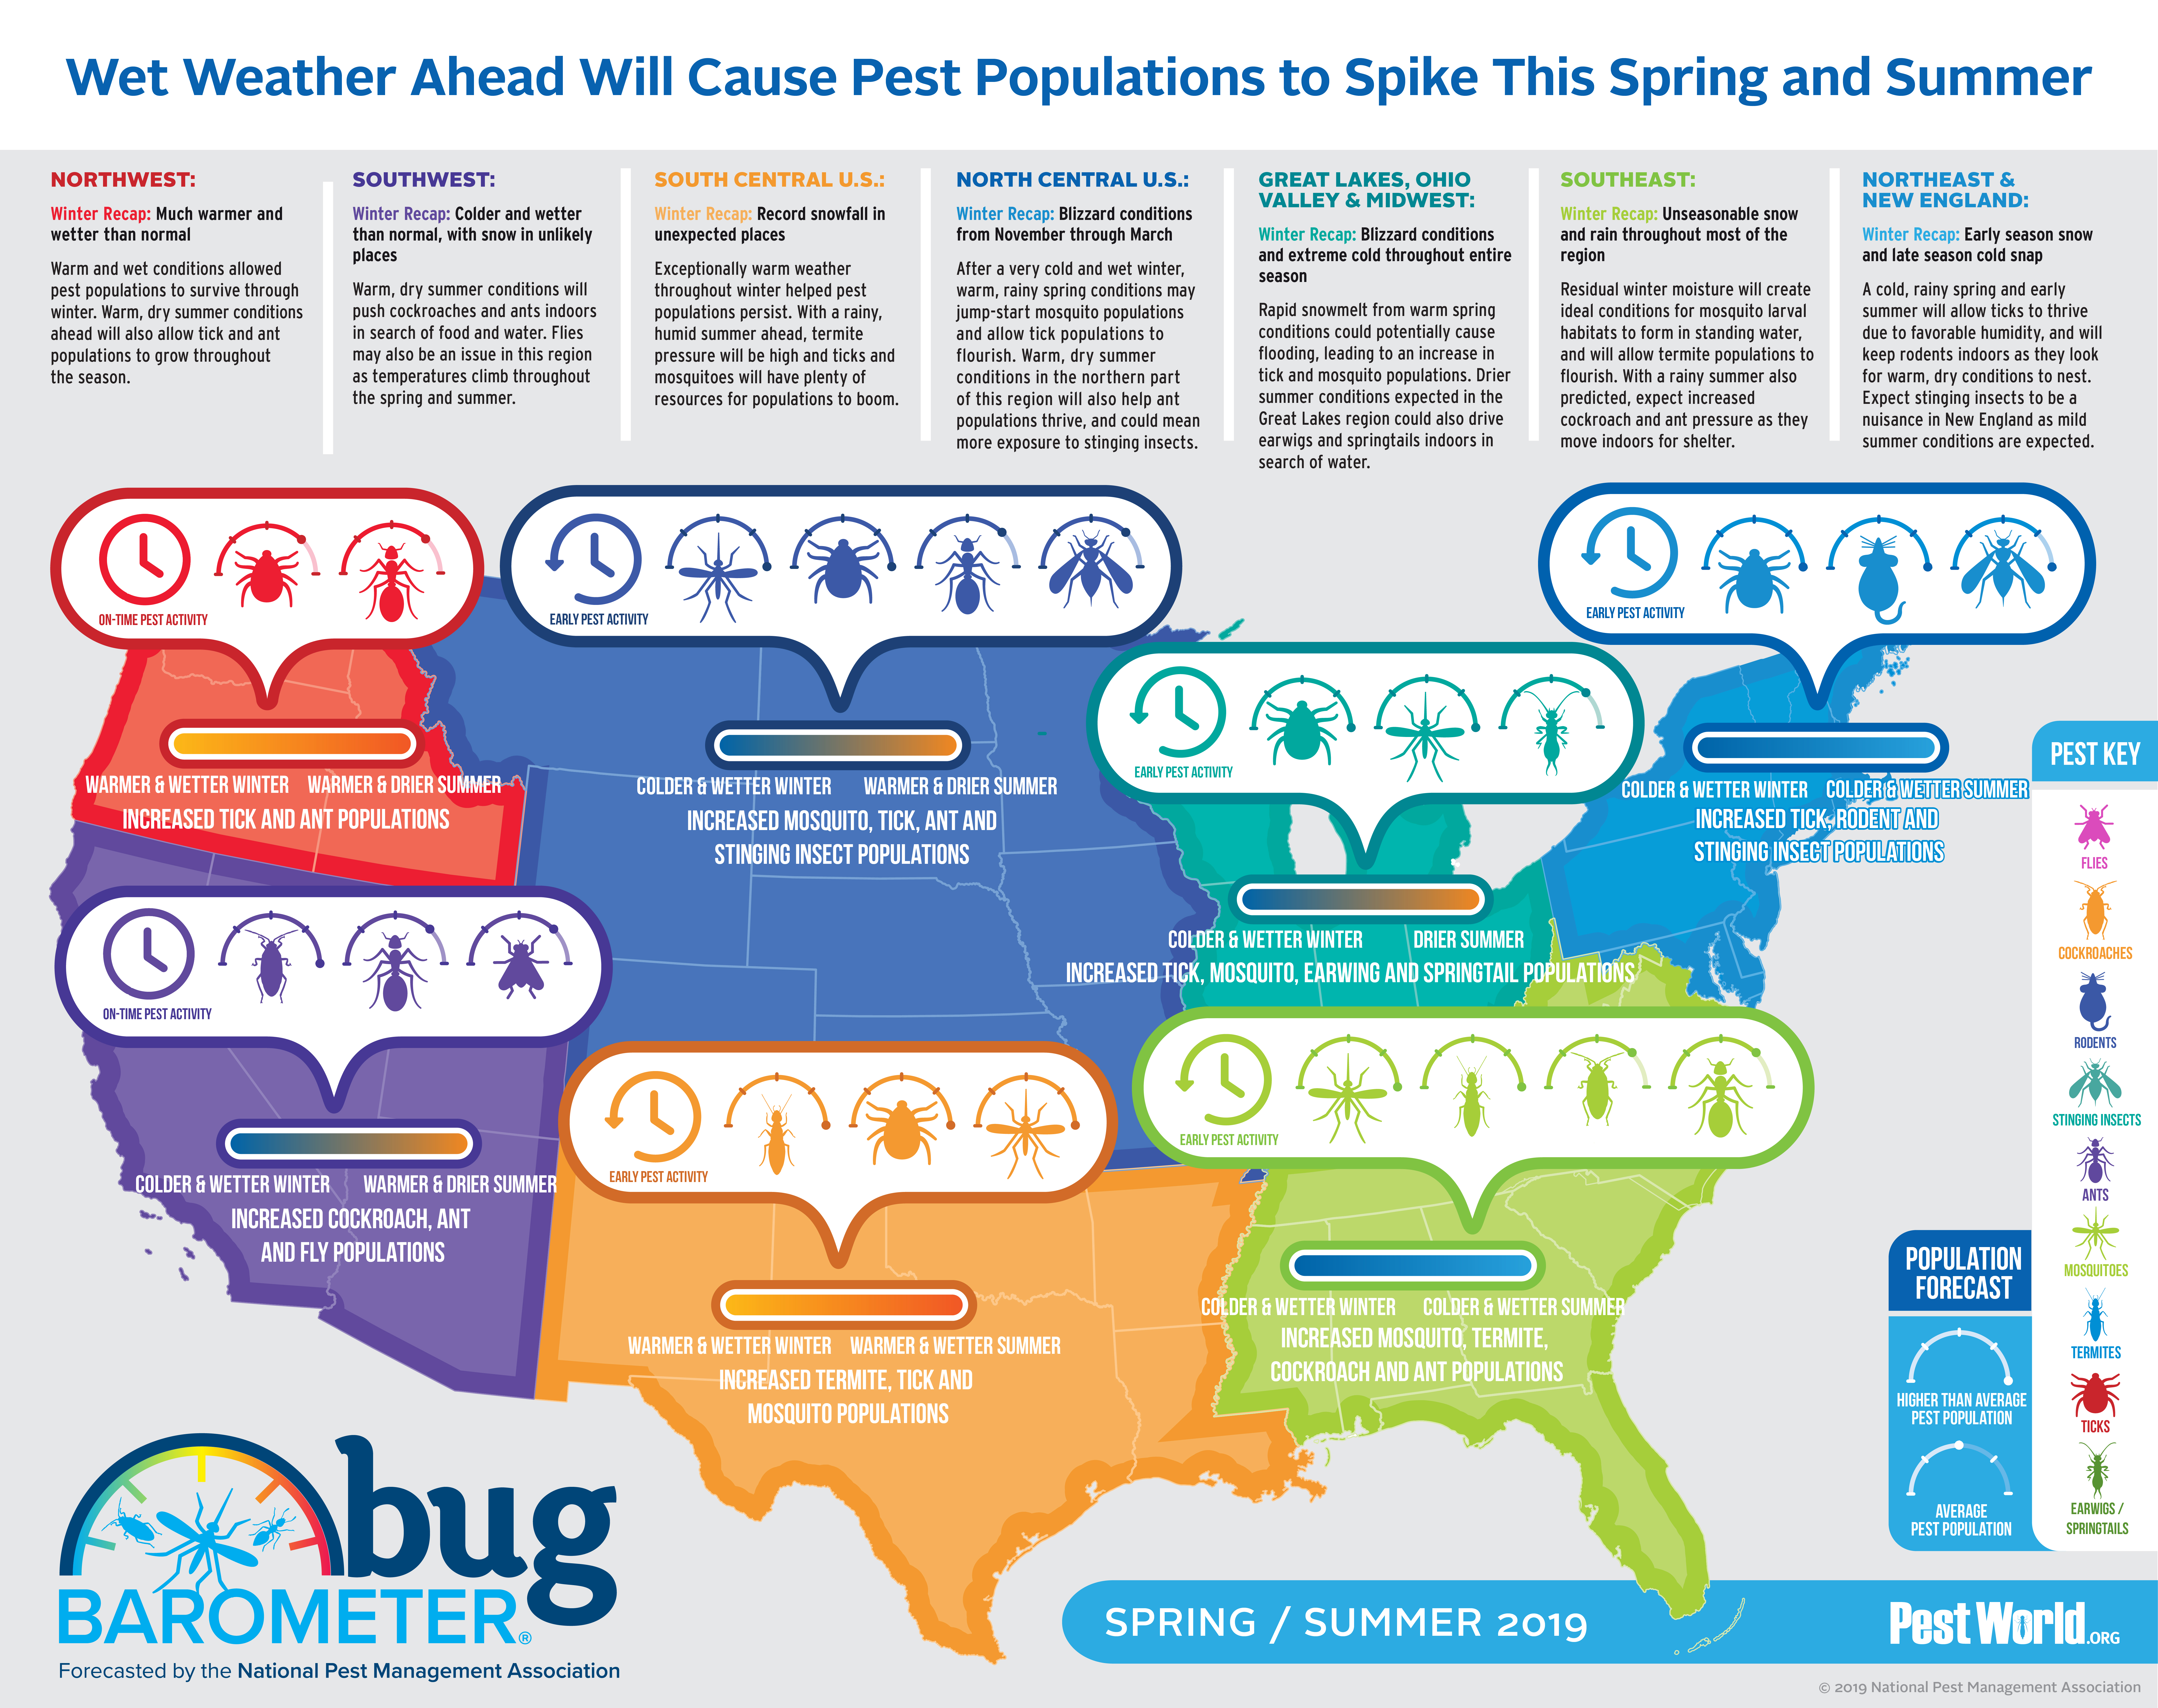 Pest World’s 2019 Spring/Summer Bug Barometer is out!